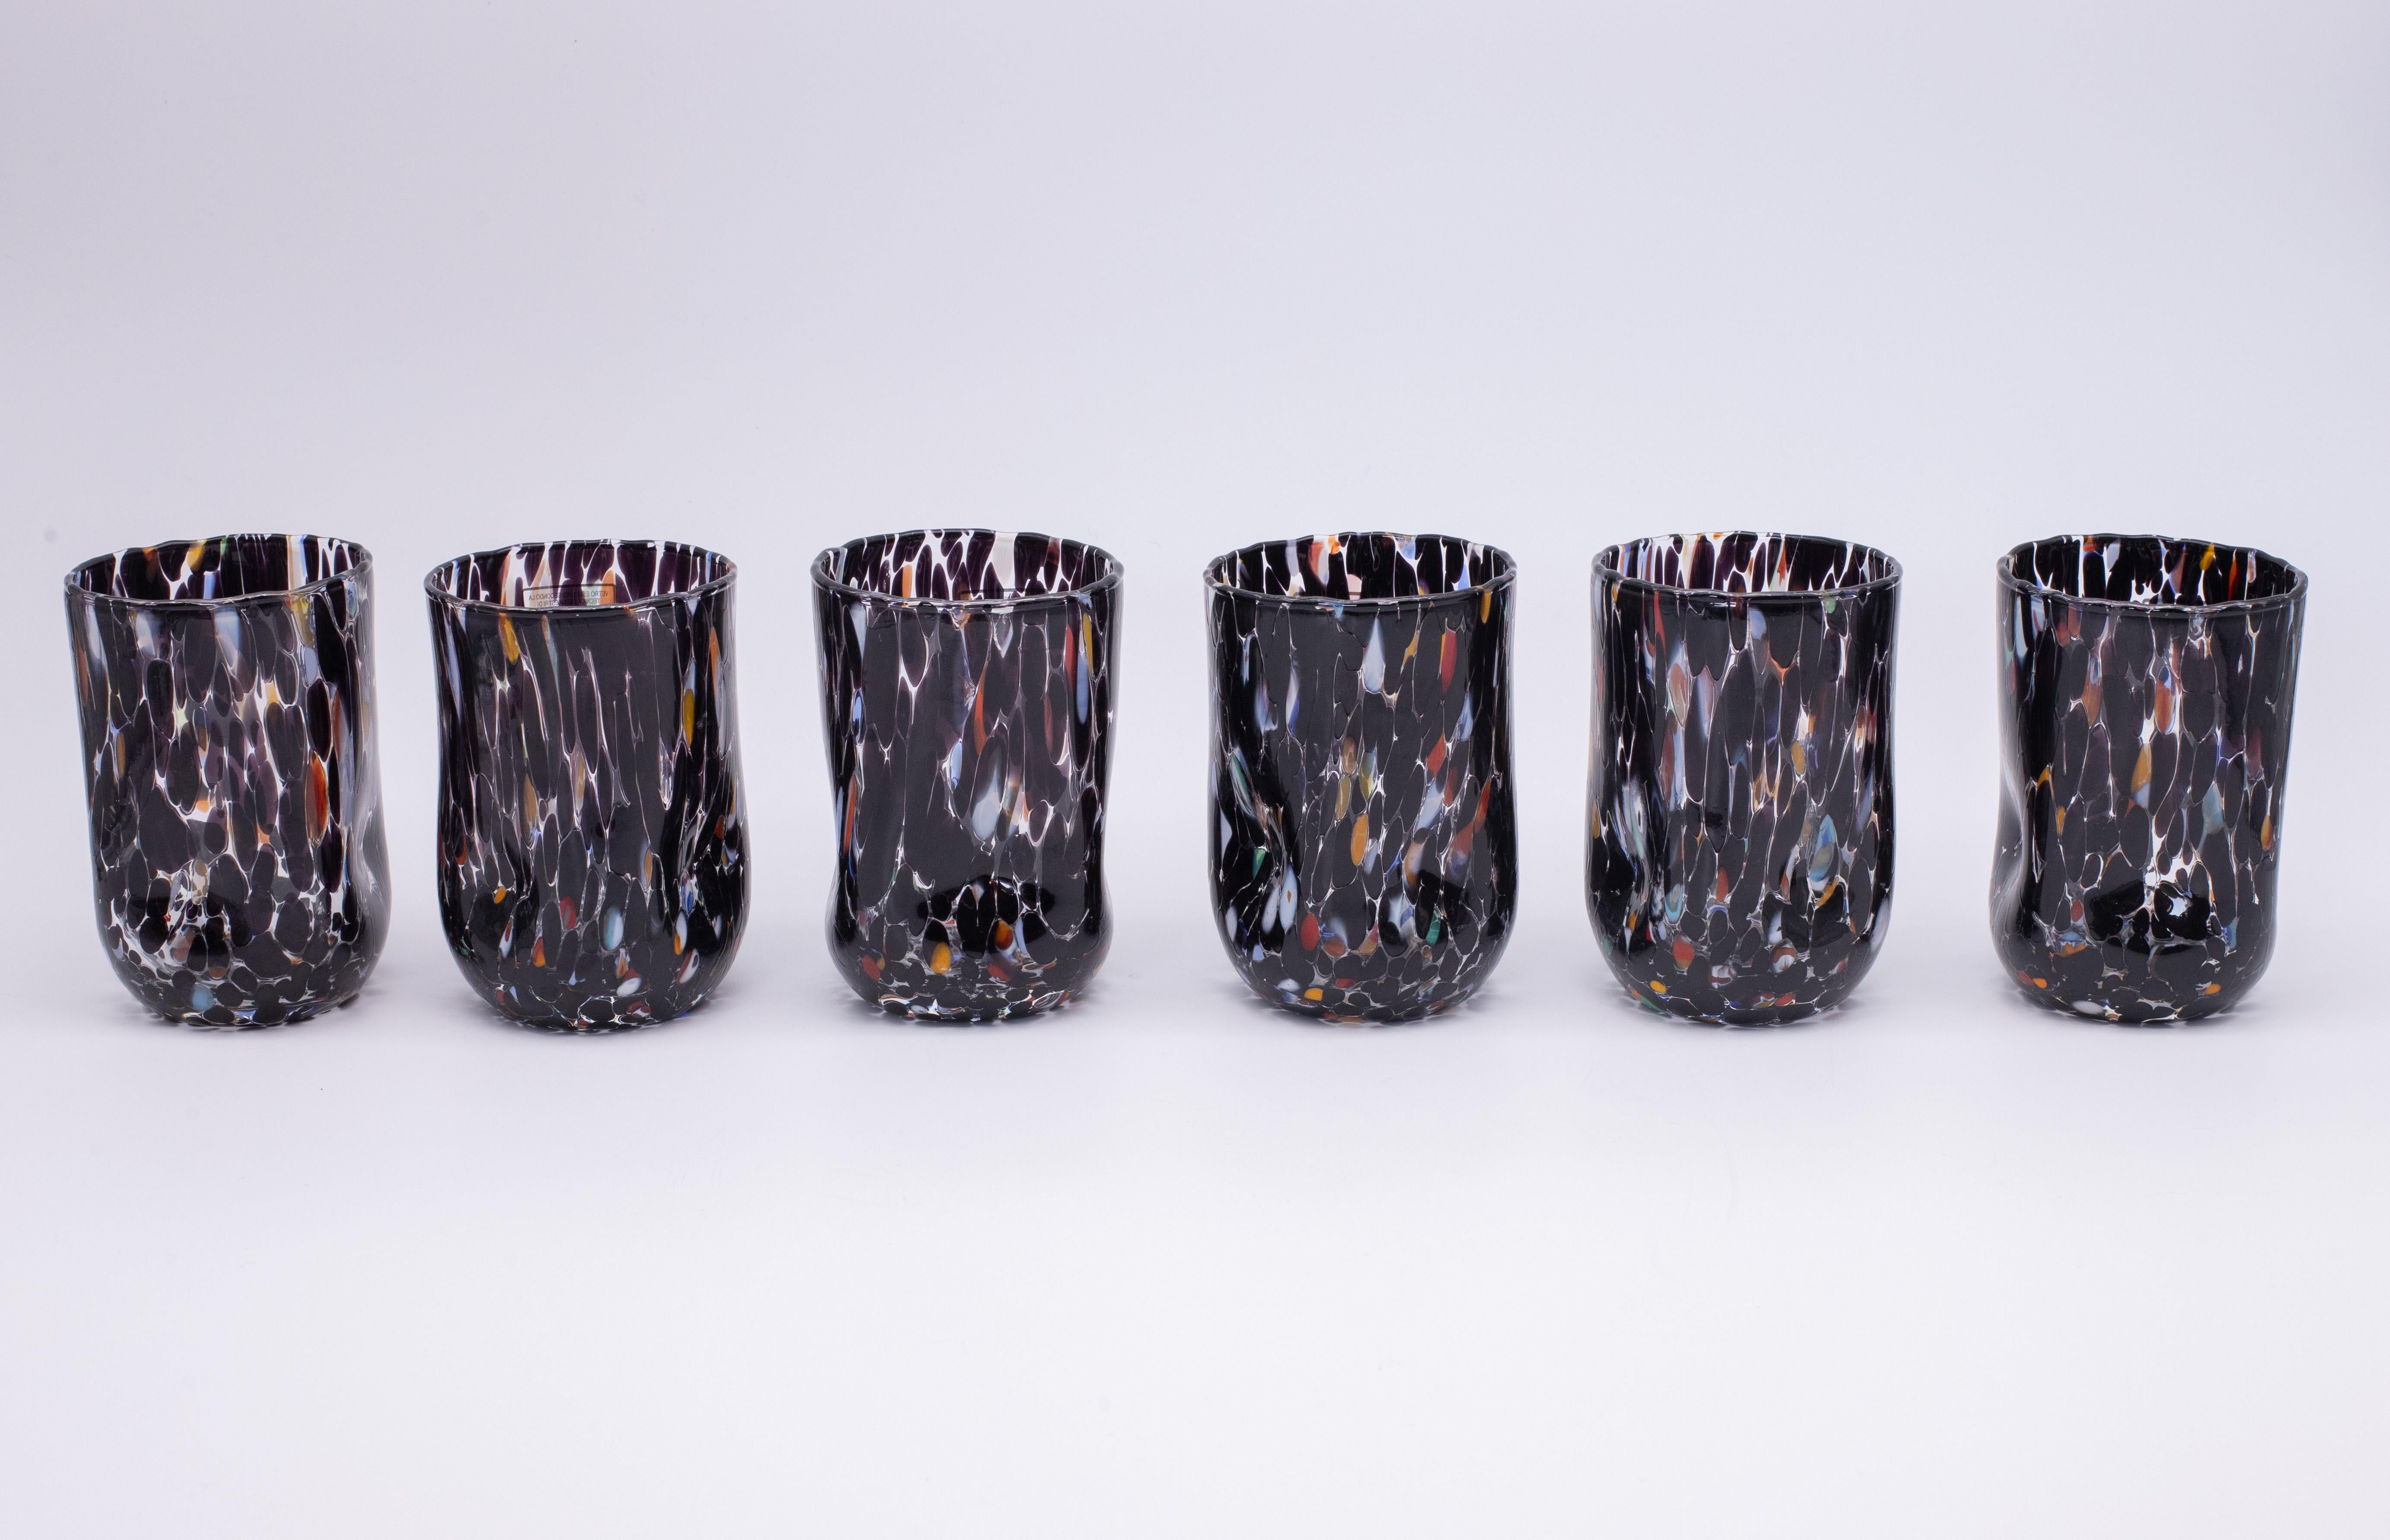 Set de six verres à eau/boisson/vin couleur Noir - Verre de Murano - Fabriqué en Italie.

Ces verres individuels de Murano sont inspirés du verre classique 